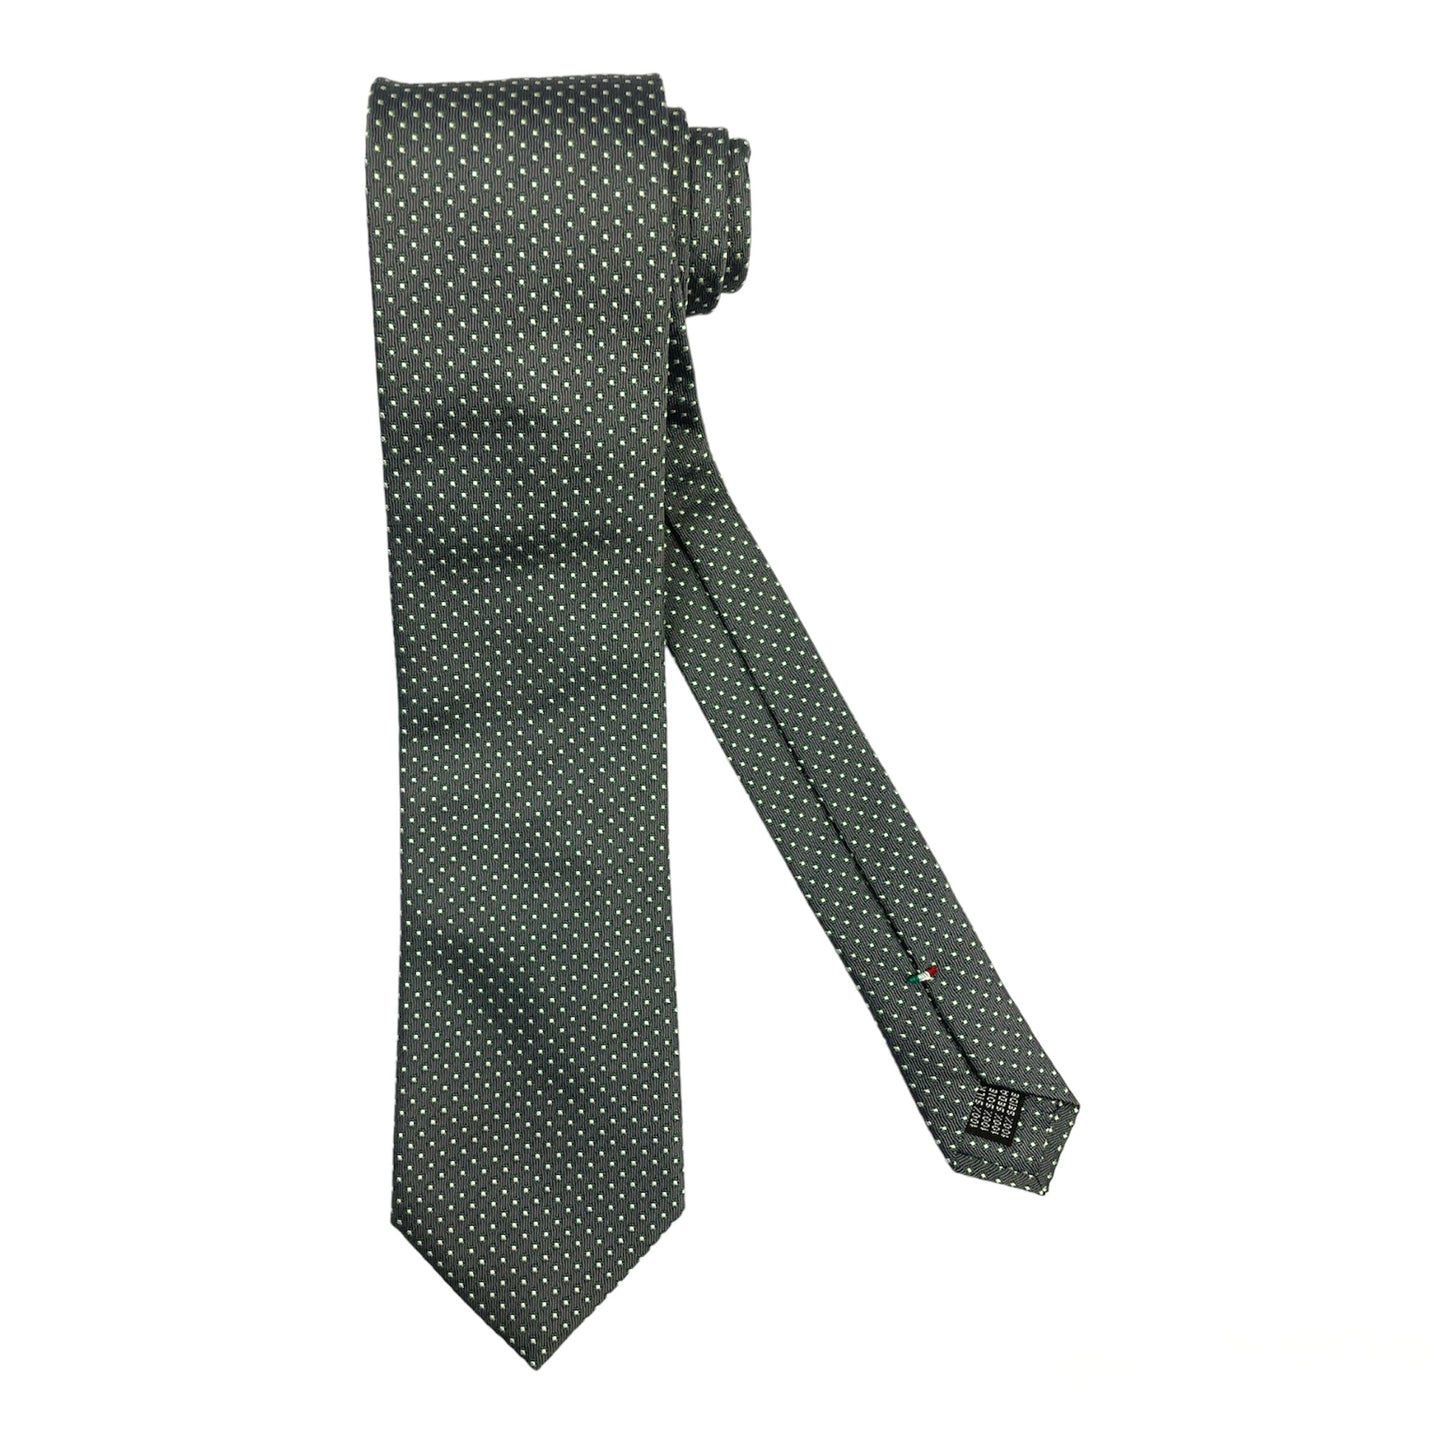 Cravatta seta grigia con fiorellini verdi